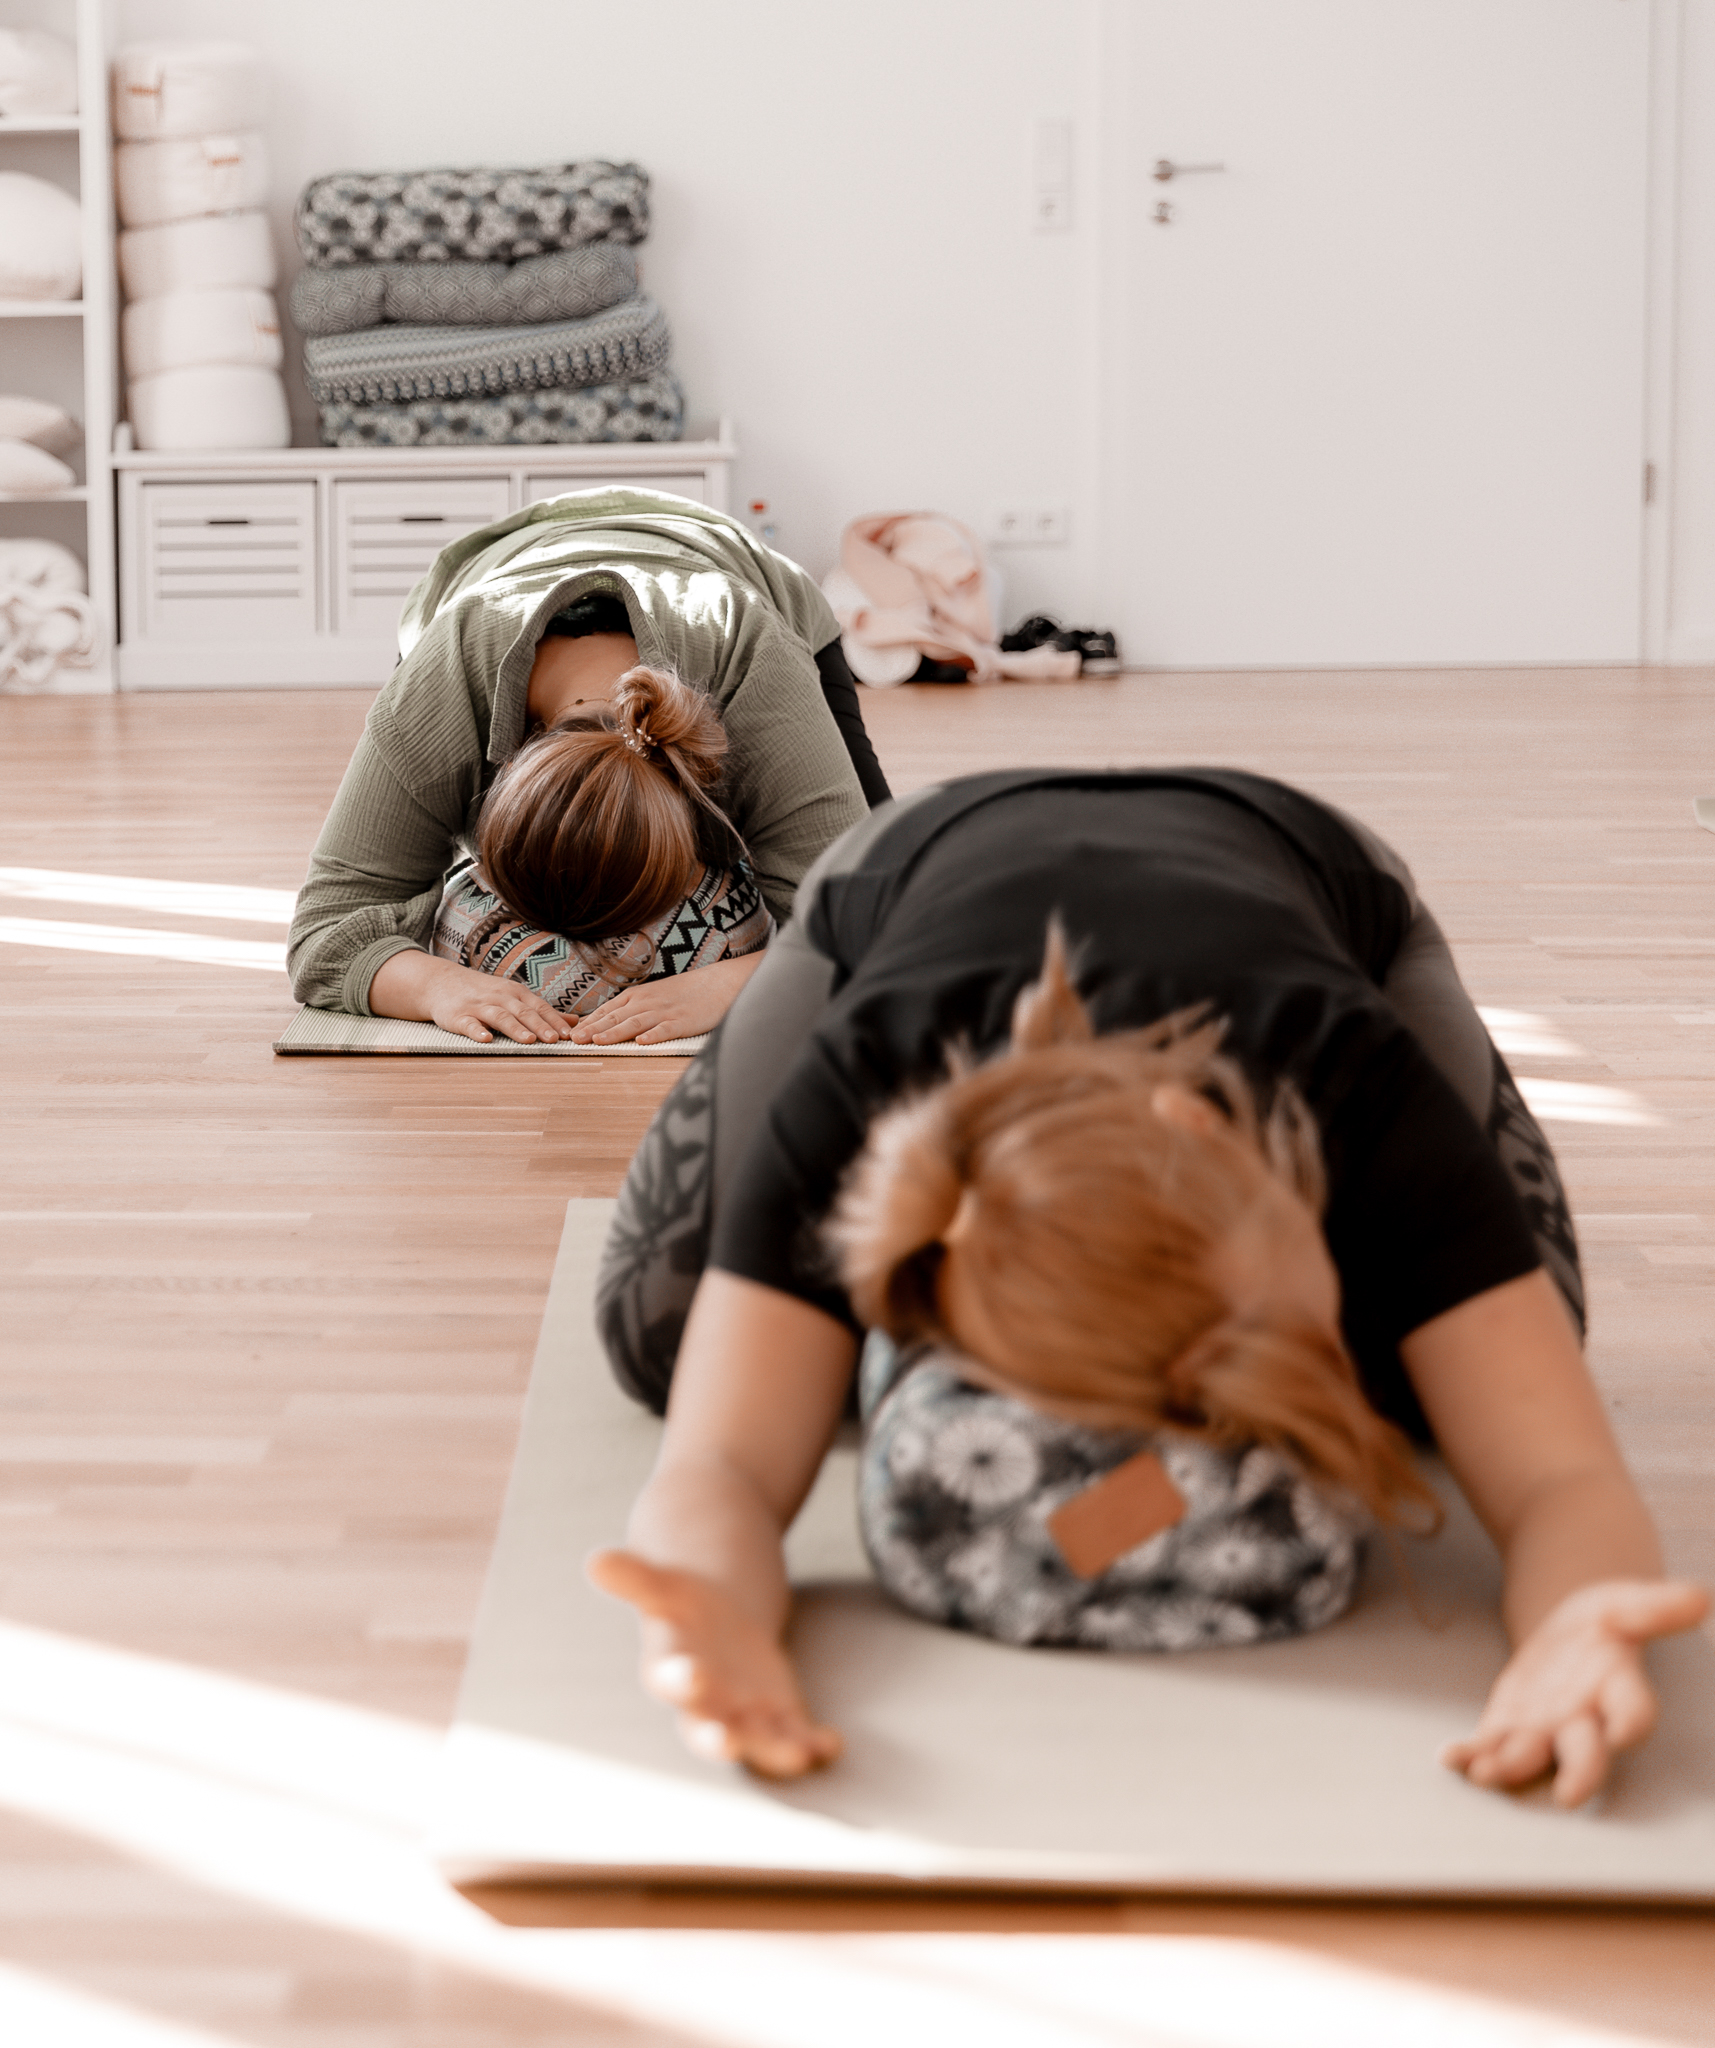 samtosga yoga studios präventionskurse dorsten